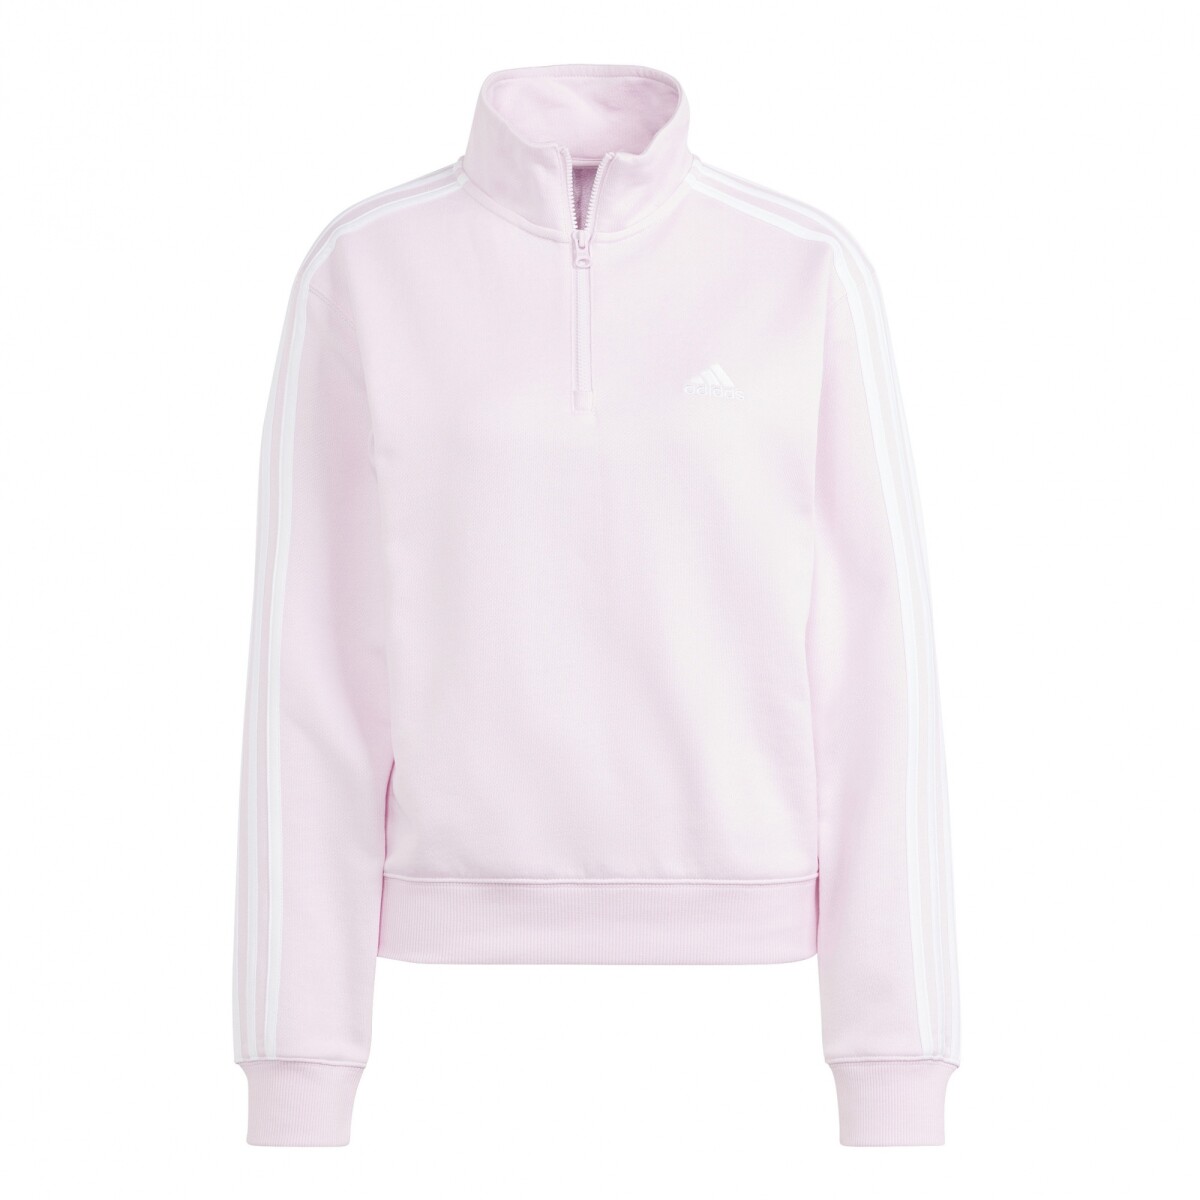 Buzo de Mujer Adidas Zip 3S - Rosa - Blanco 